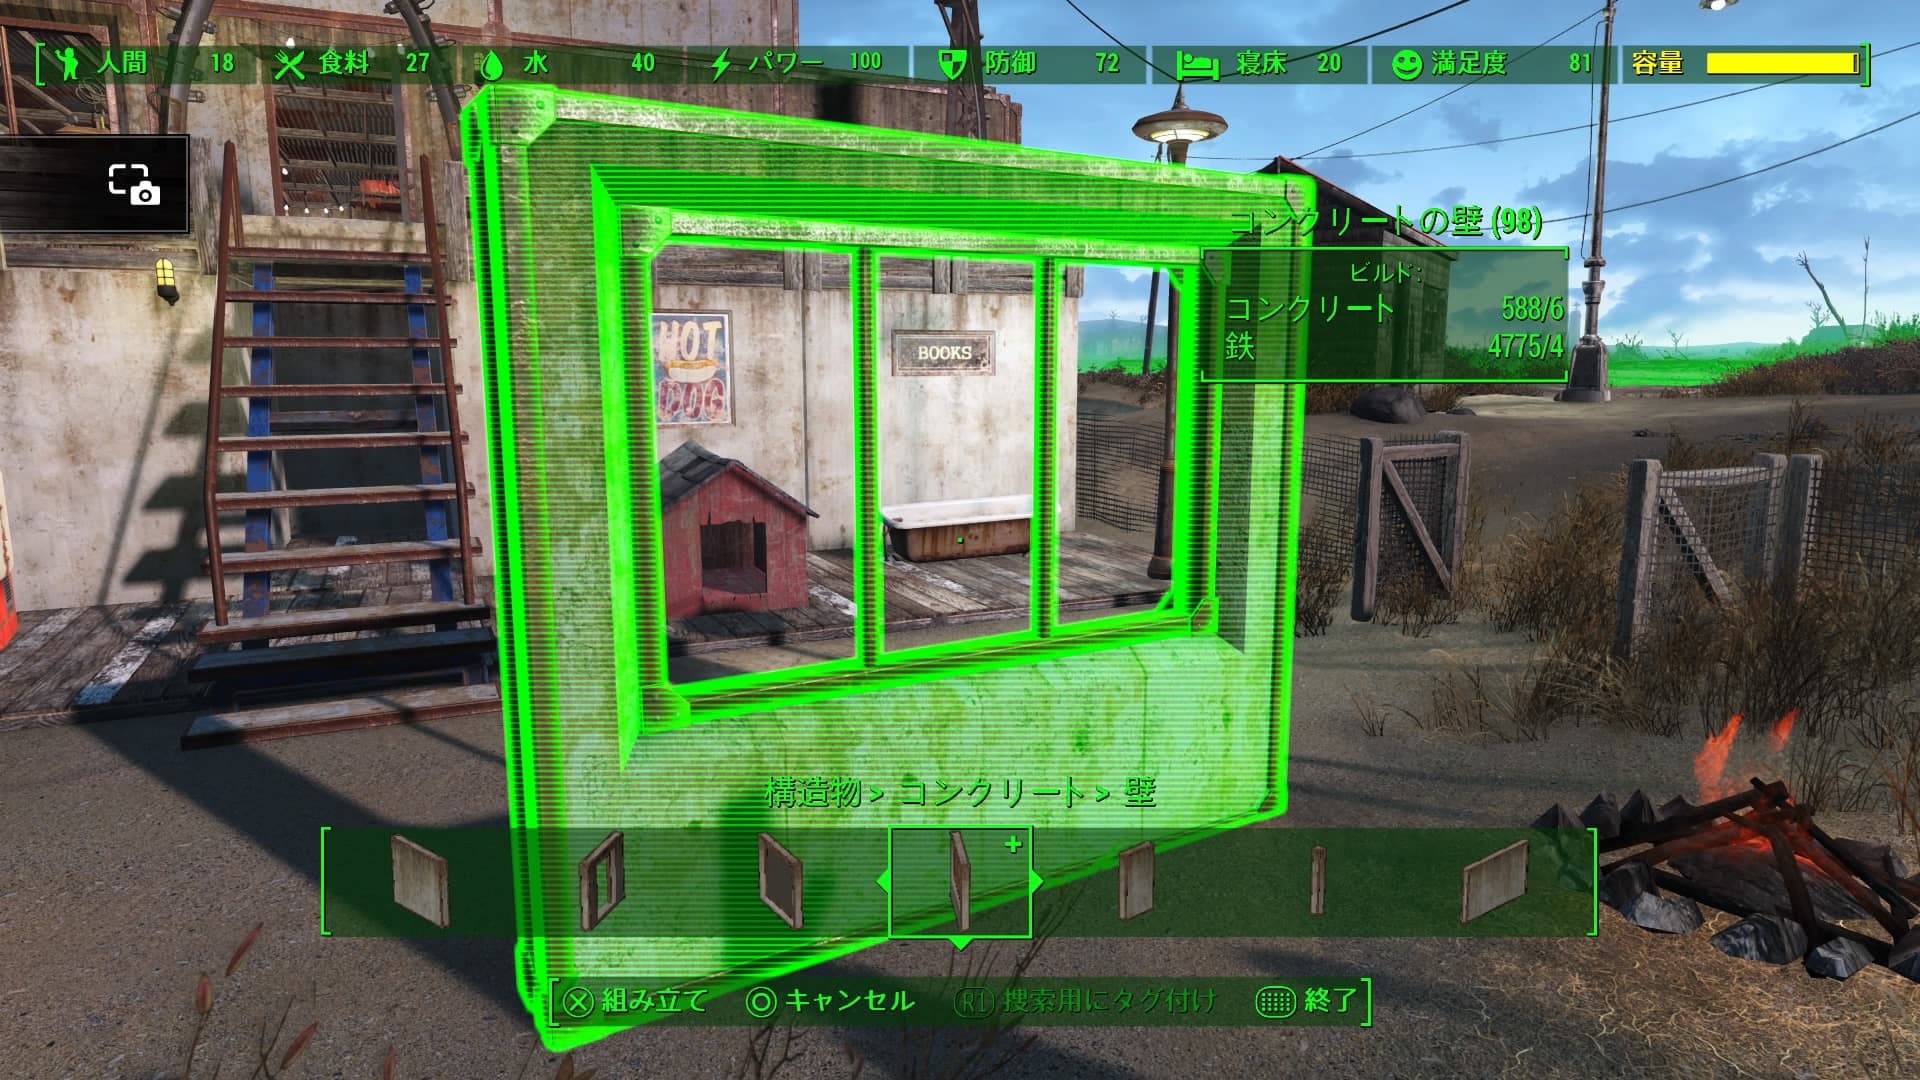 Fallout4 クラフト 街灯と窓と明るい照明がうれしい Dlc Wasteland Workshop で使えるアイテムが増えました あまげー